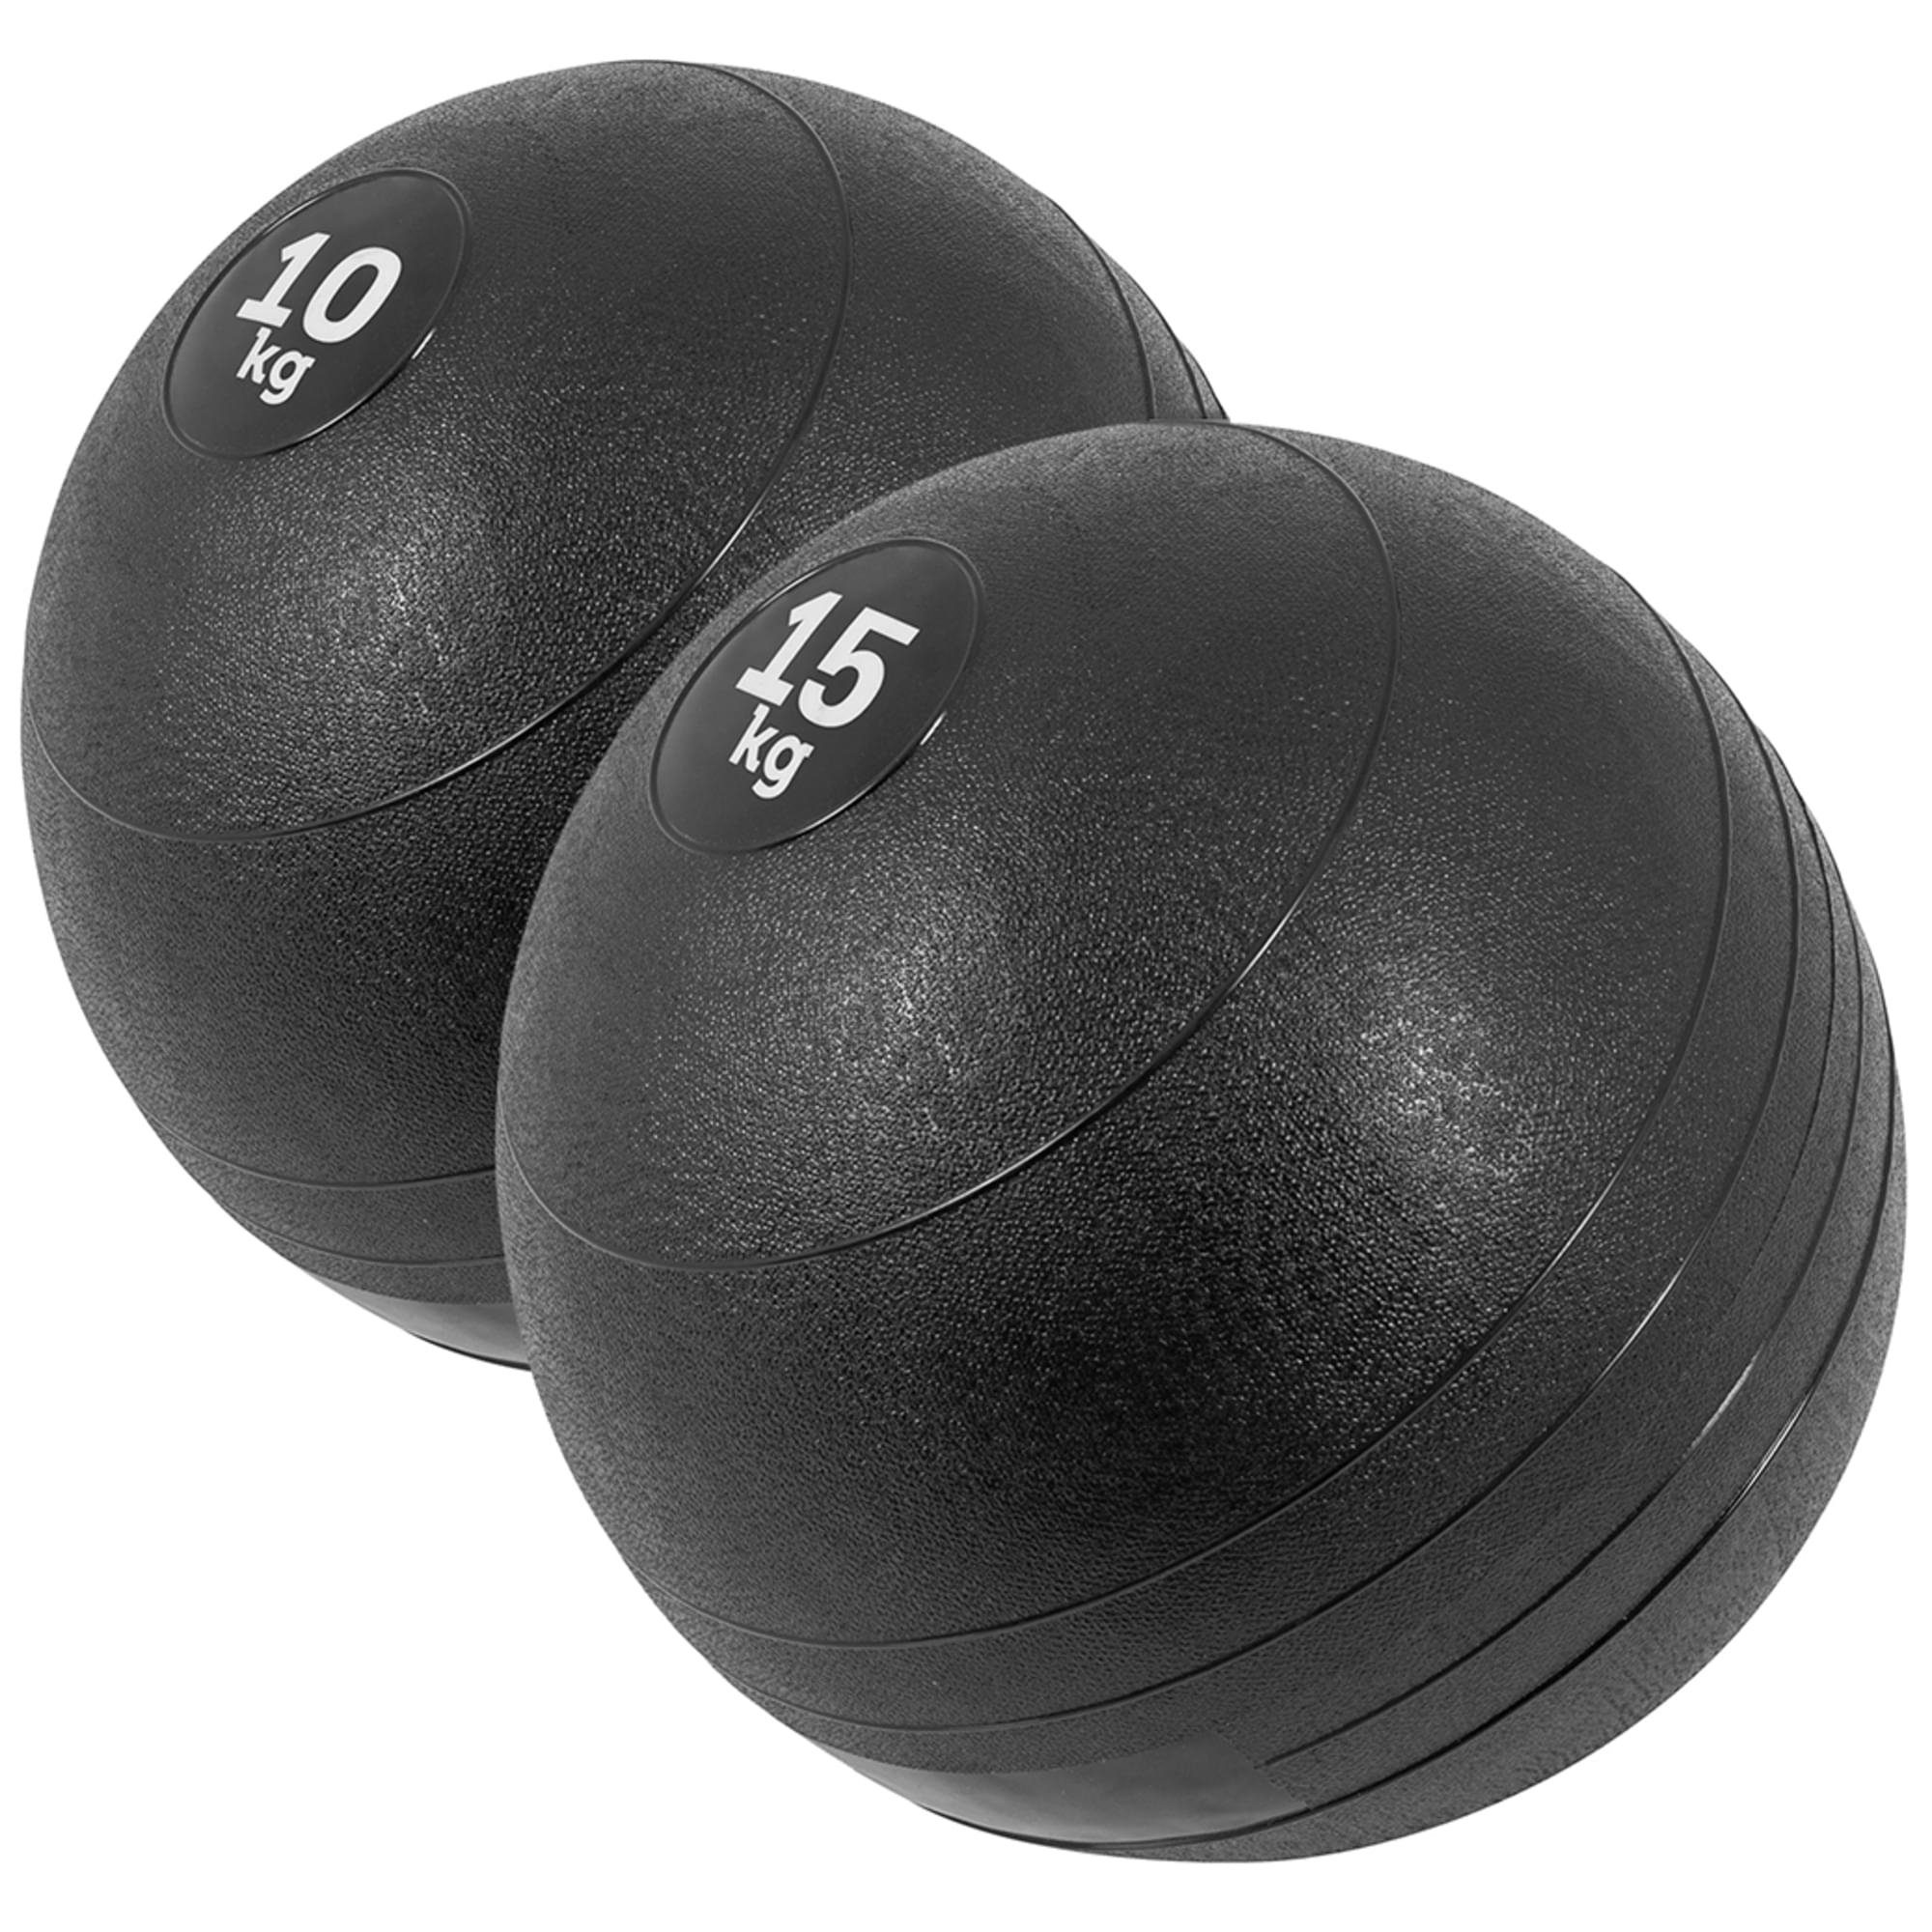 GORILLA SPORTS Medizinball 3kg, 5kg, 7kg, 10kg, 15kg, 20kg, Einzeln/Set, mit Griffiger Oberfläche Set 25kg